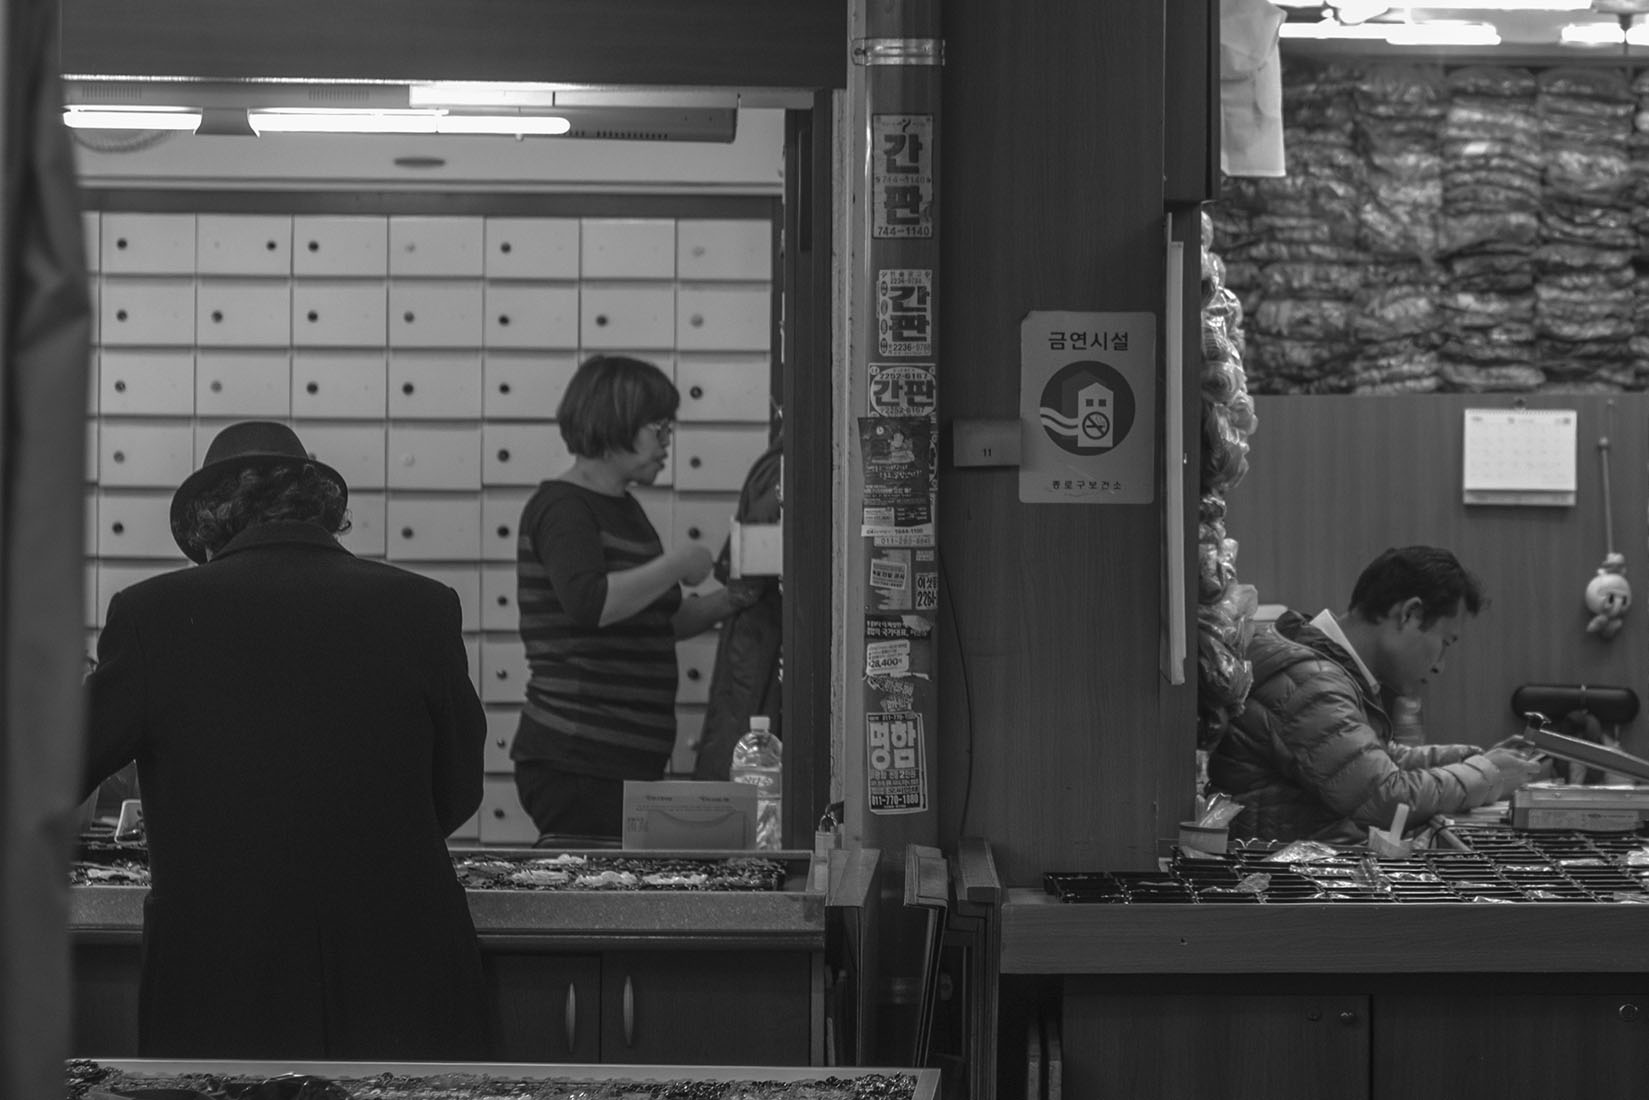 Ambiance dans les boutiques, Dongdaemun night market, bureau, homme au chapeau, noir et blanc